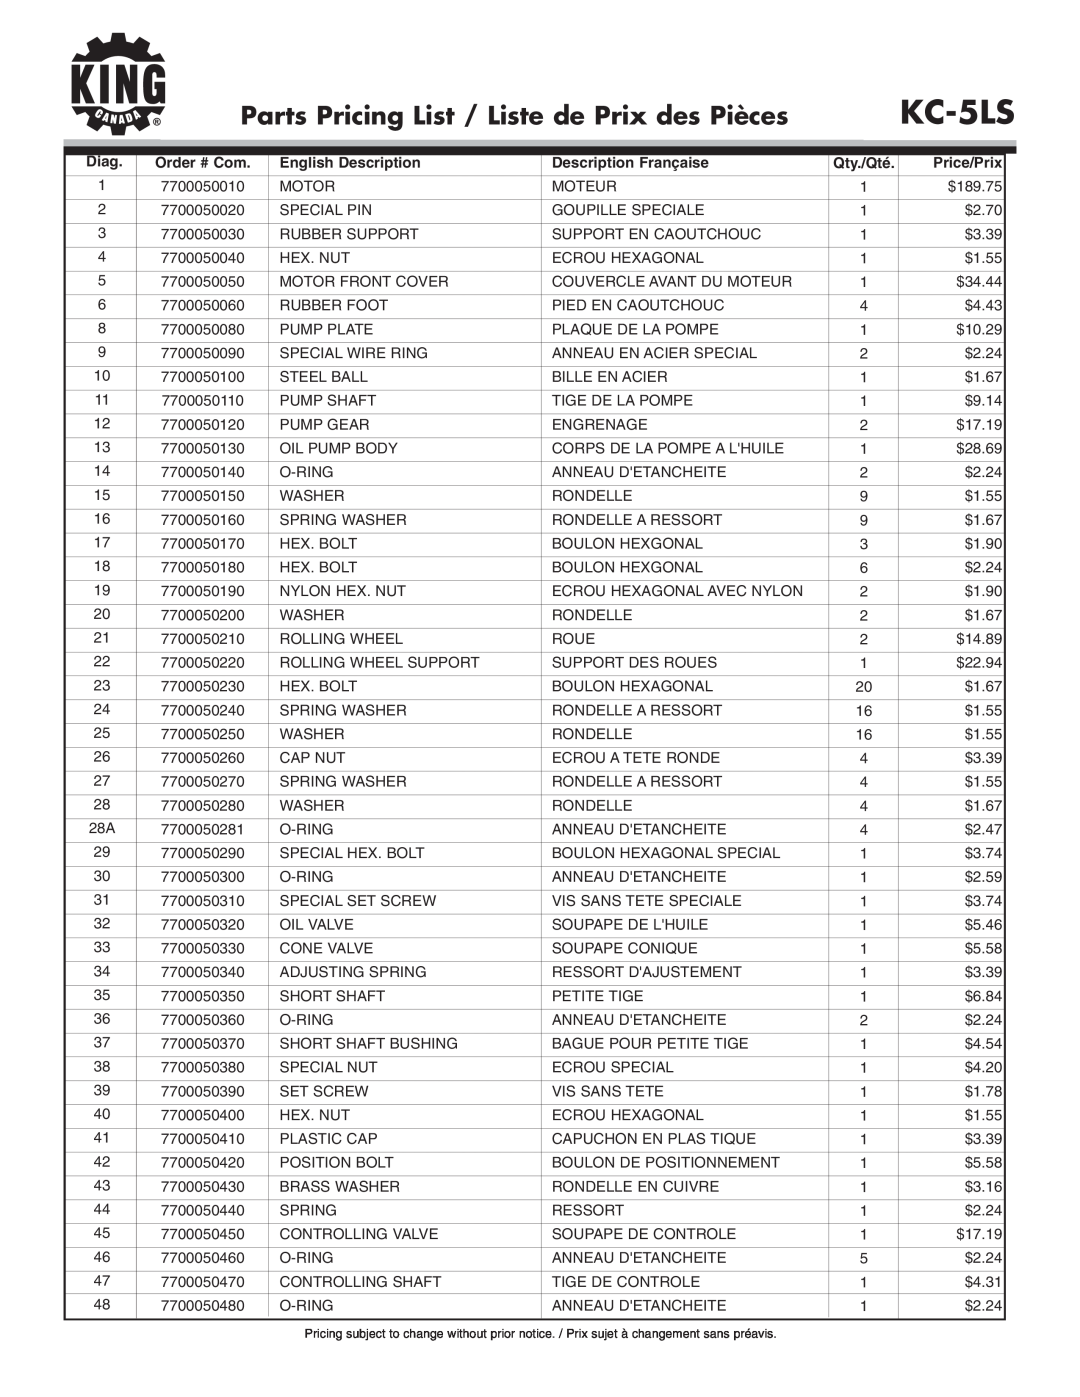 King Canada KC-5LS Parts Pricing List / Liste de Prix des Pièces, Diag, English Description, Description Française 